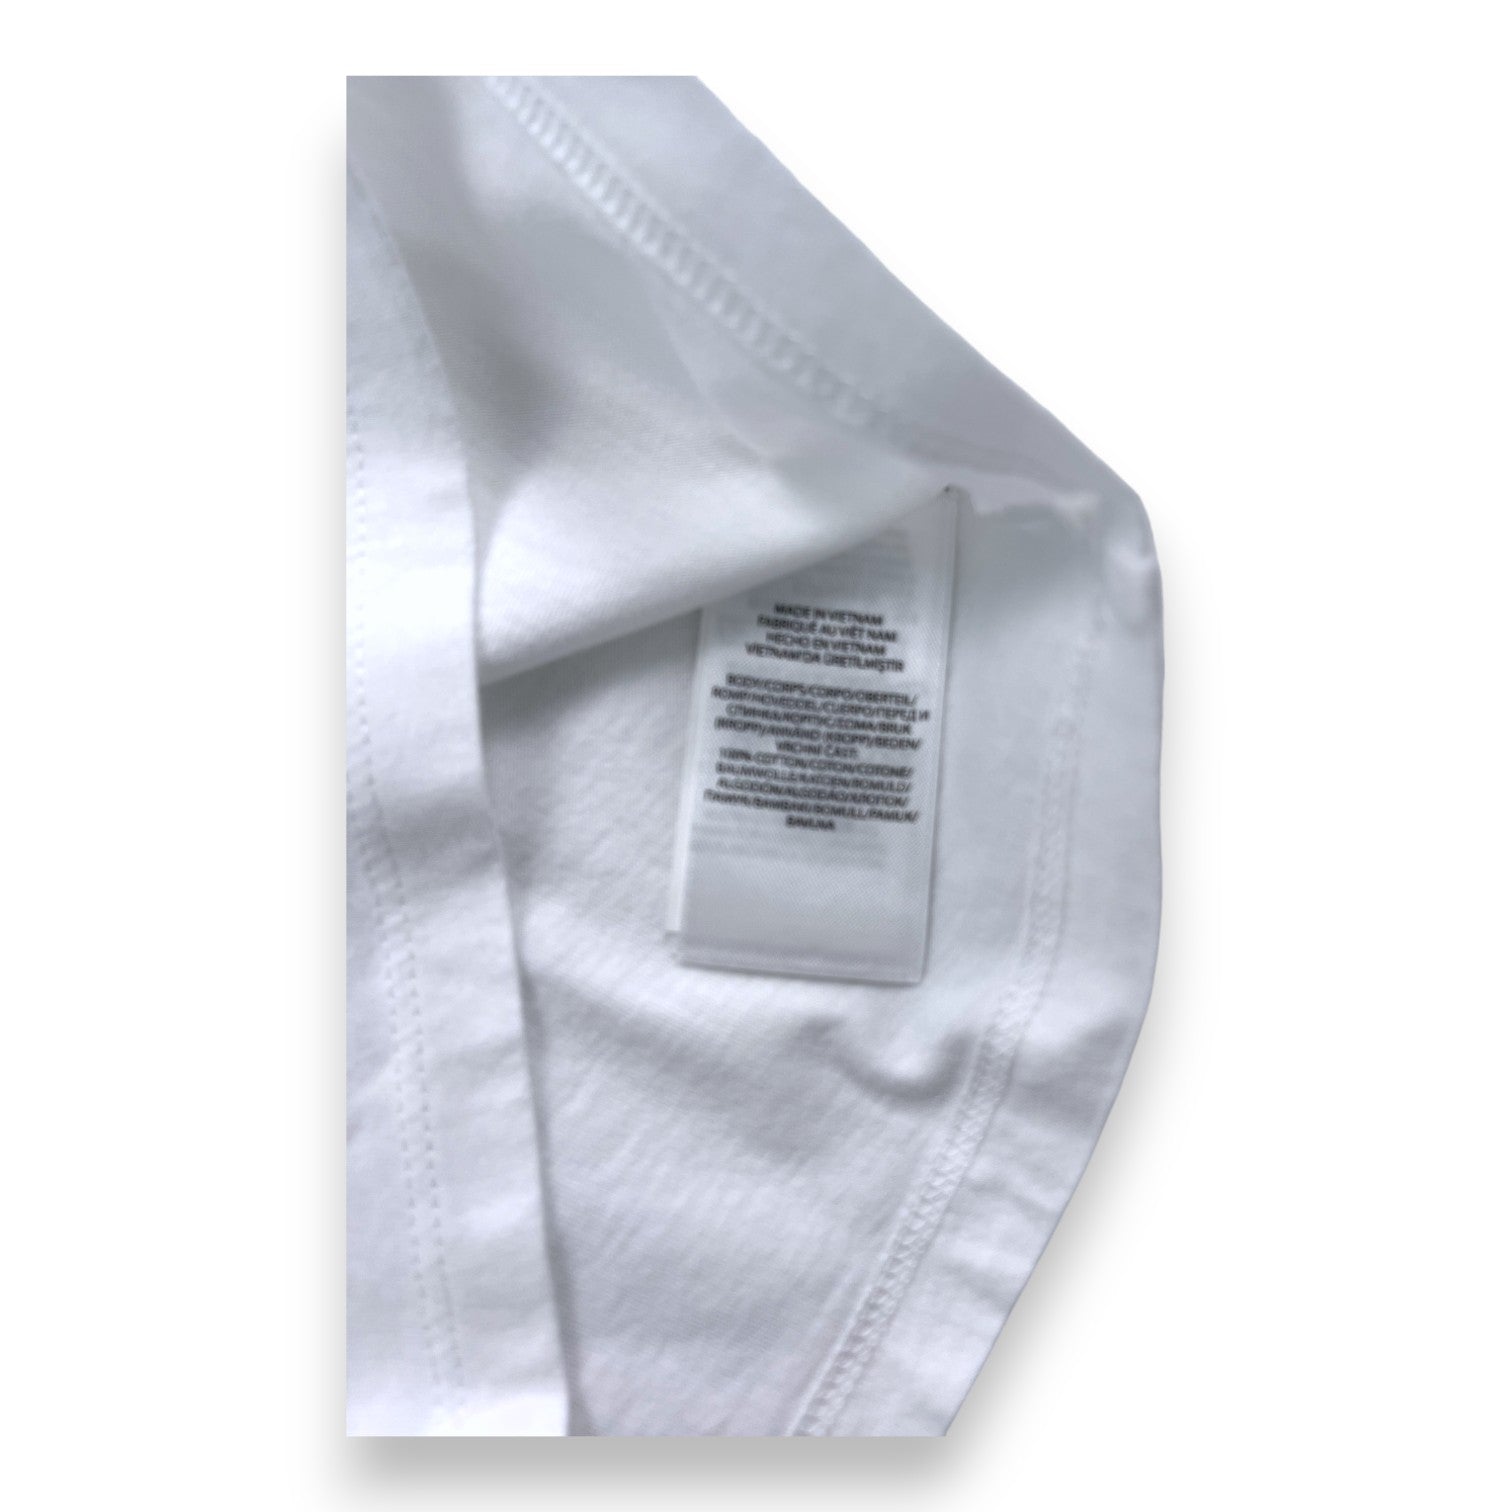 RALPH LAUREN - T shirt blanc manches courtes détails colorés - 2 ans